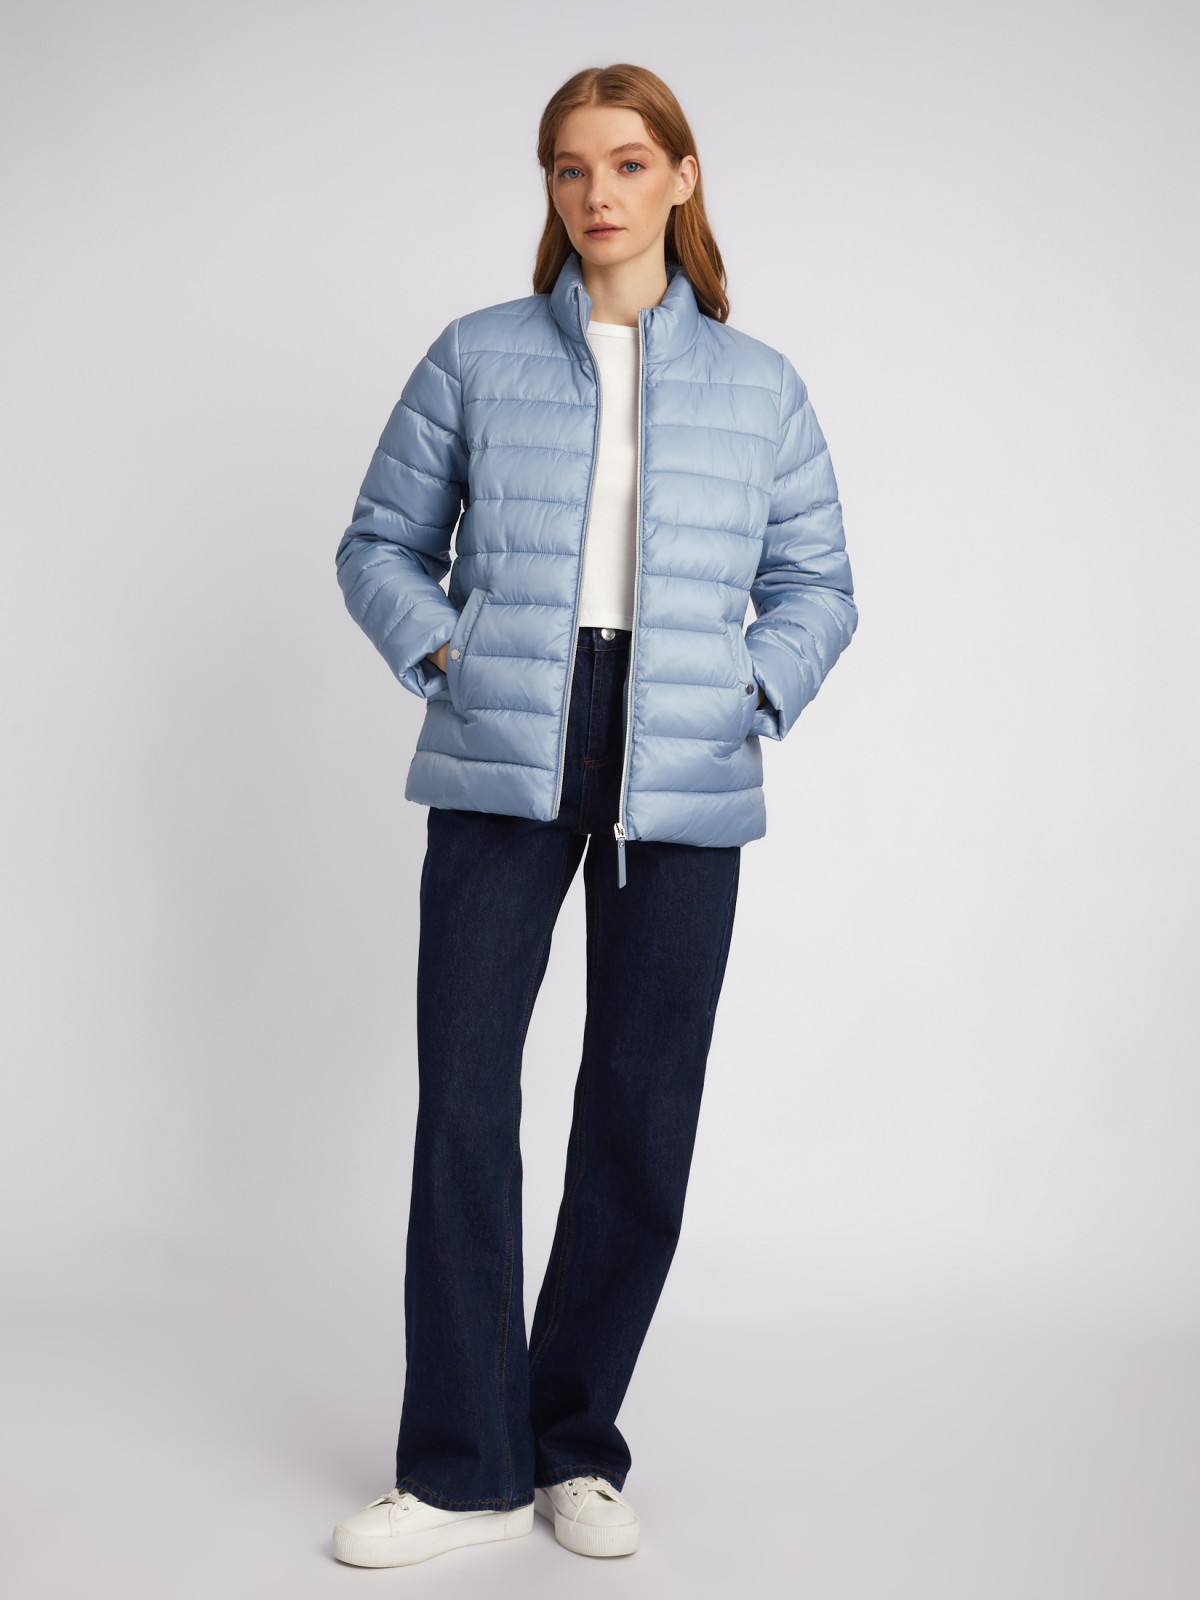 Утеплённая короткая куртка на молнии с воротником zolla 024135112154, цвет голубой, размер S - фото 2